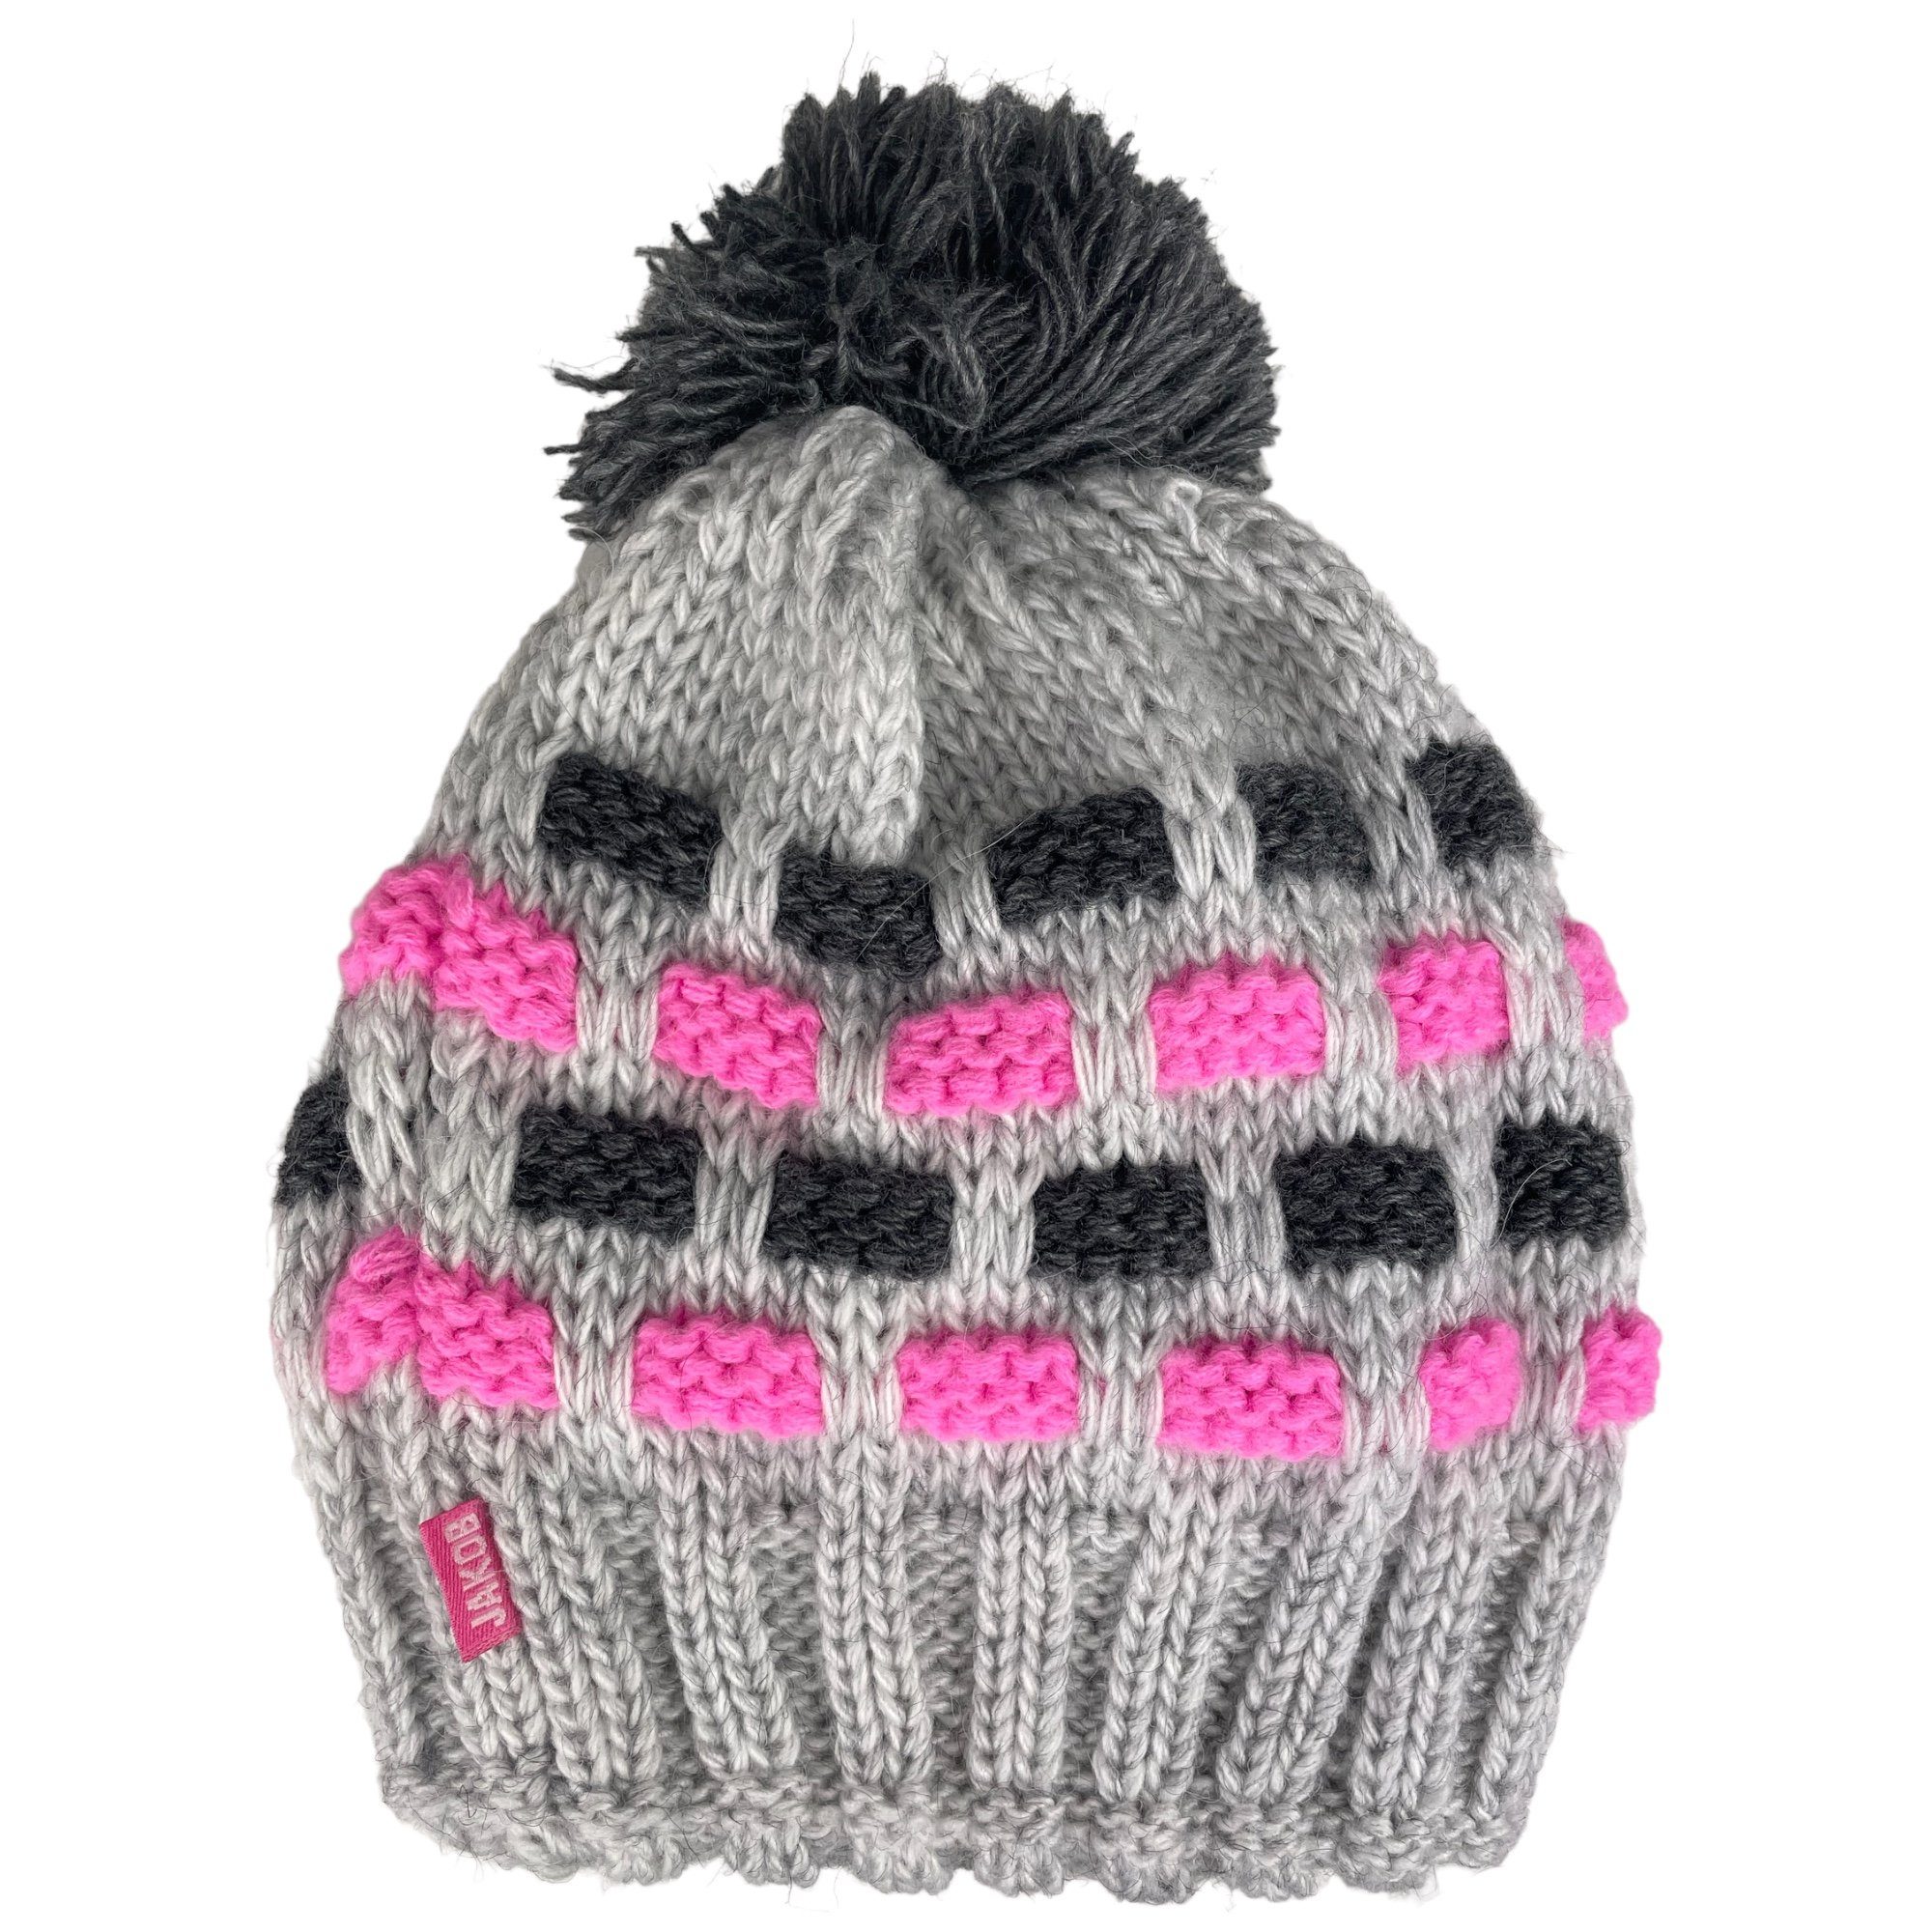 Taschen4life Bommelmütze Mütze mit Bommel für Damen Mädchen Kinder mehrfarbig, klassisch gestrickt, Beanie grau/pink